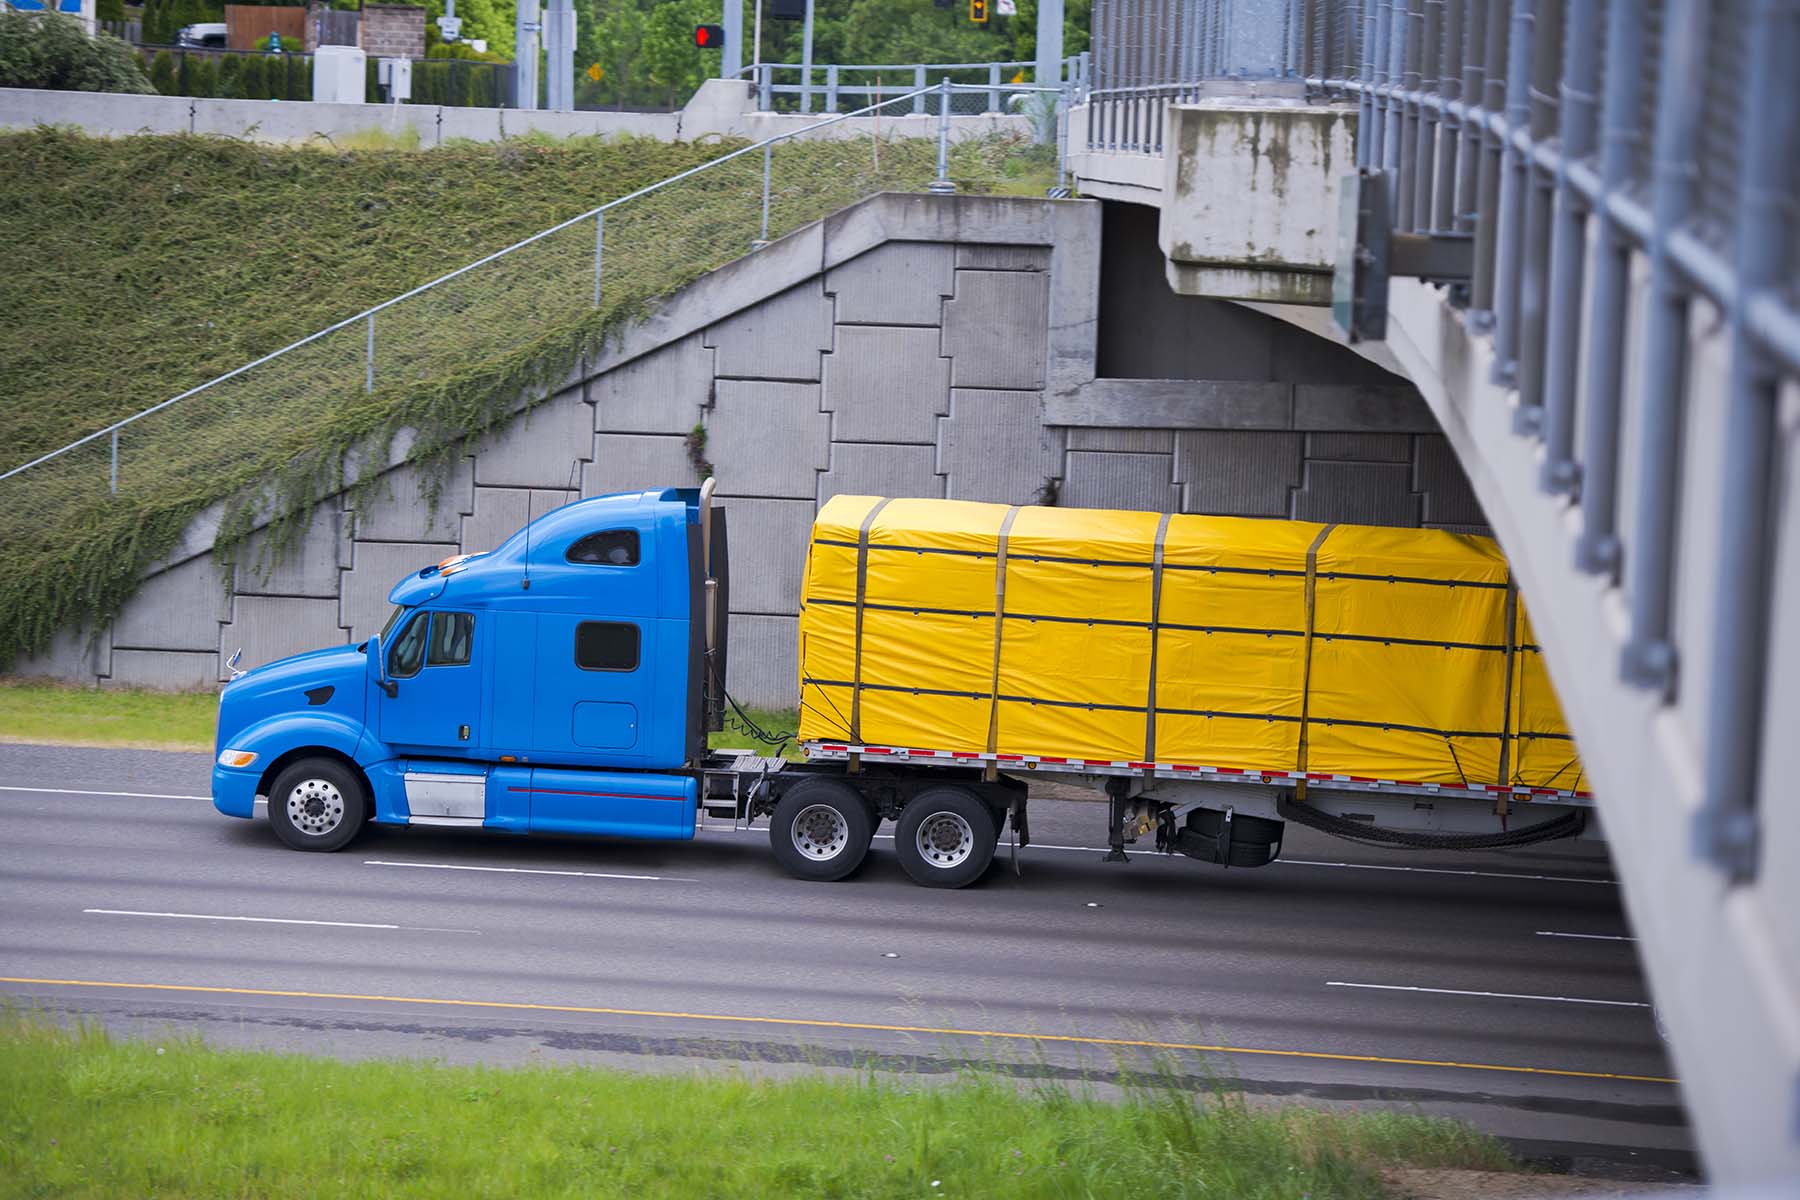 AXO freight broker truck carrying cotton